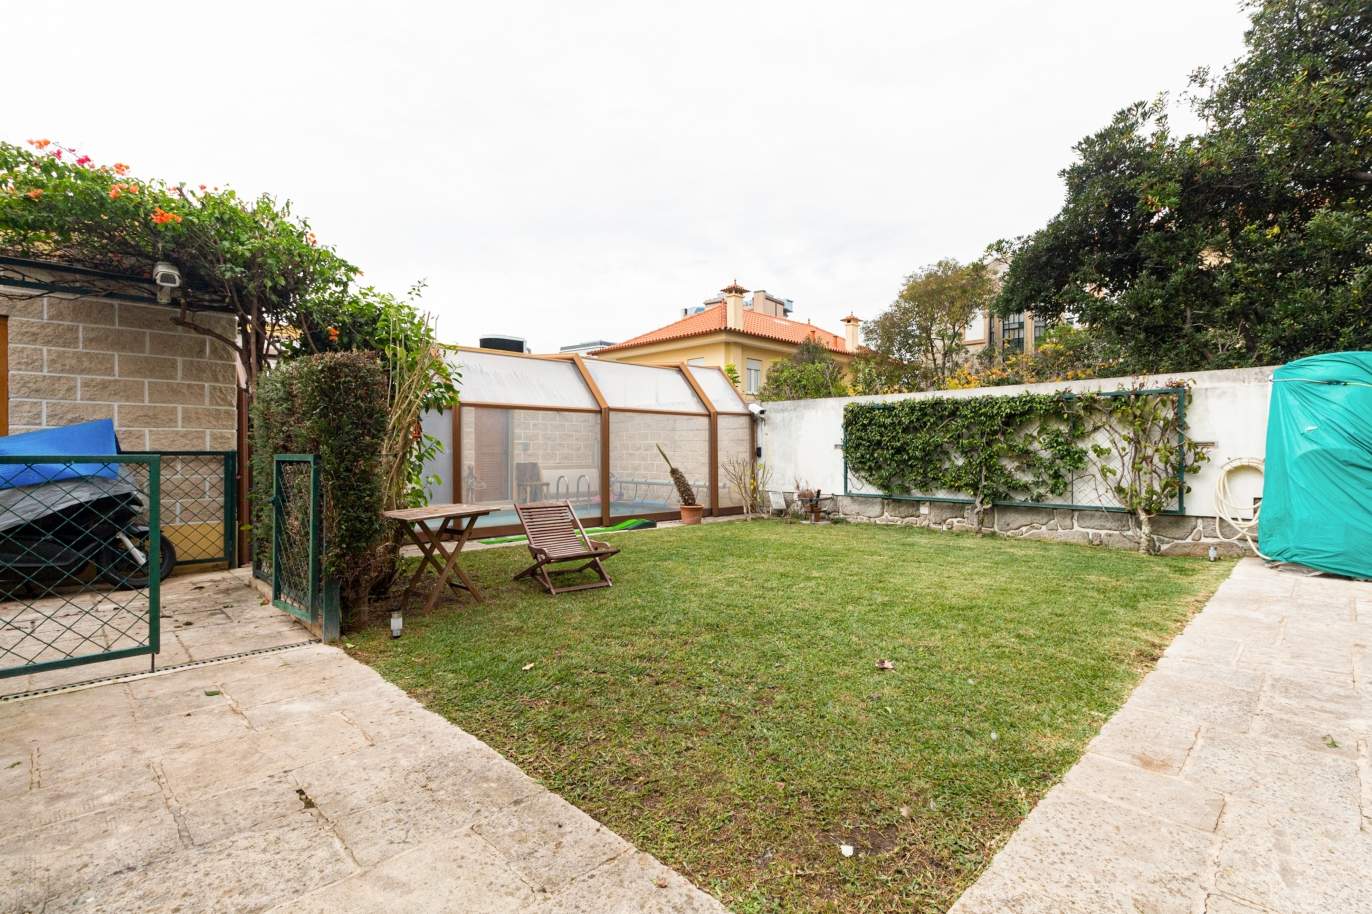 Moradia com jardim e piscina, para venda, em zona nobre na Boavista_154903